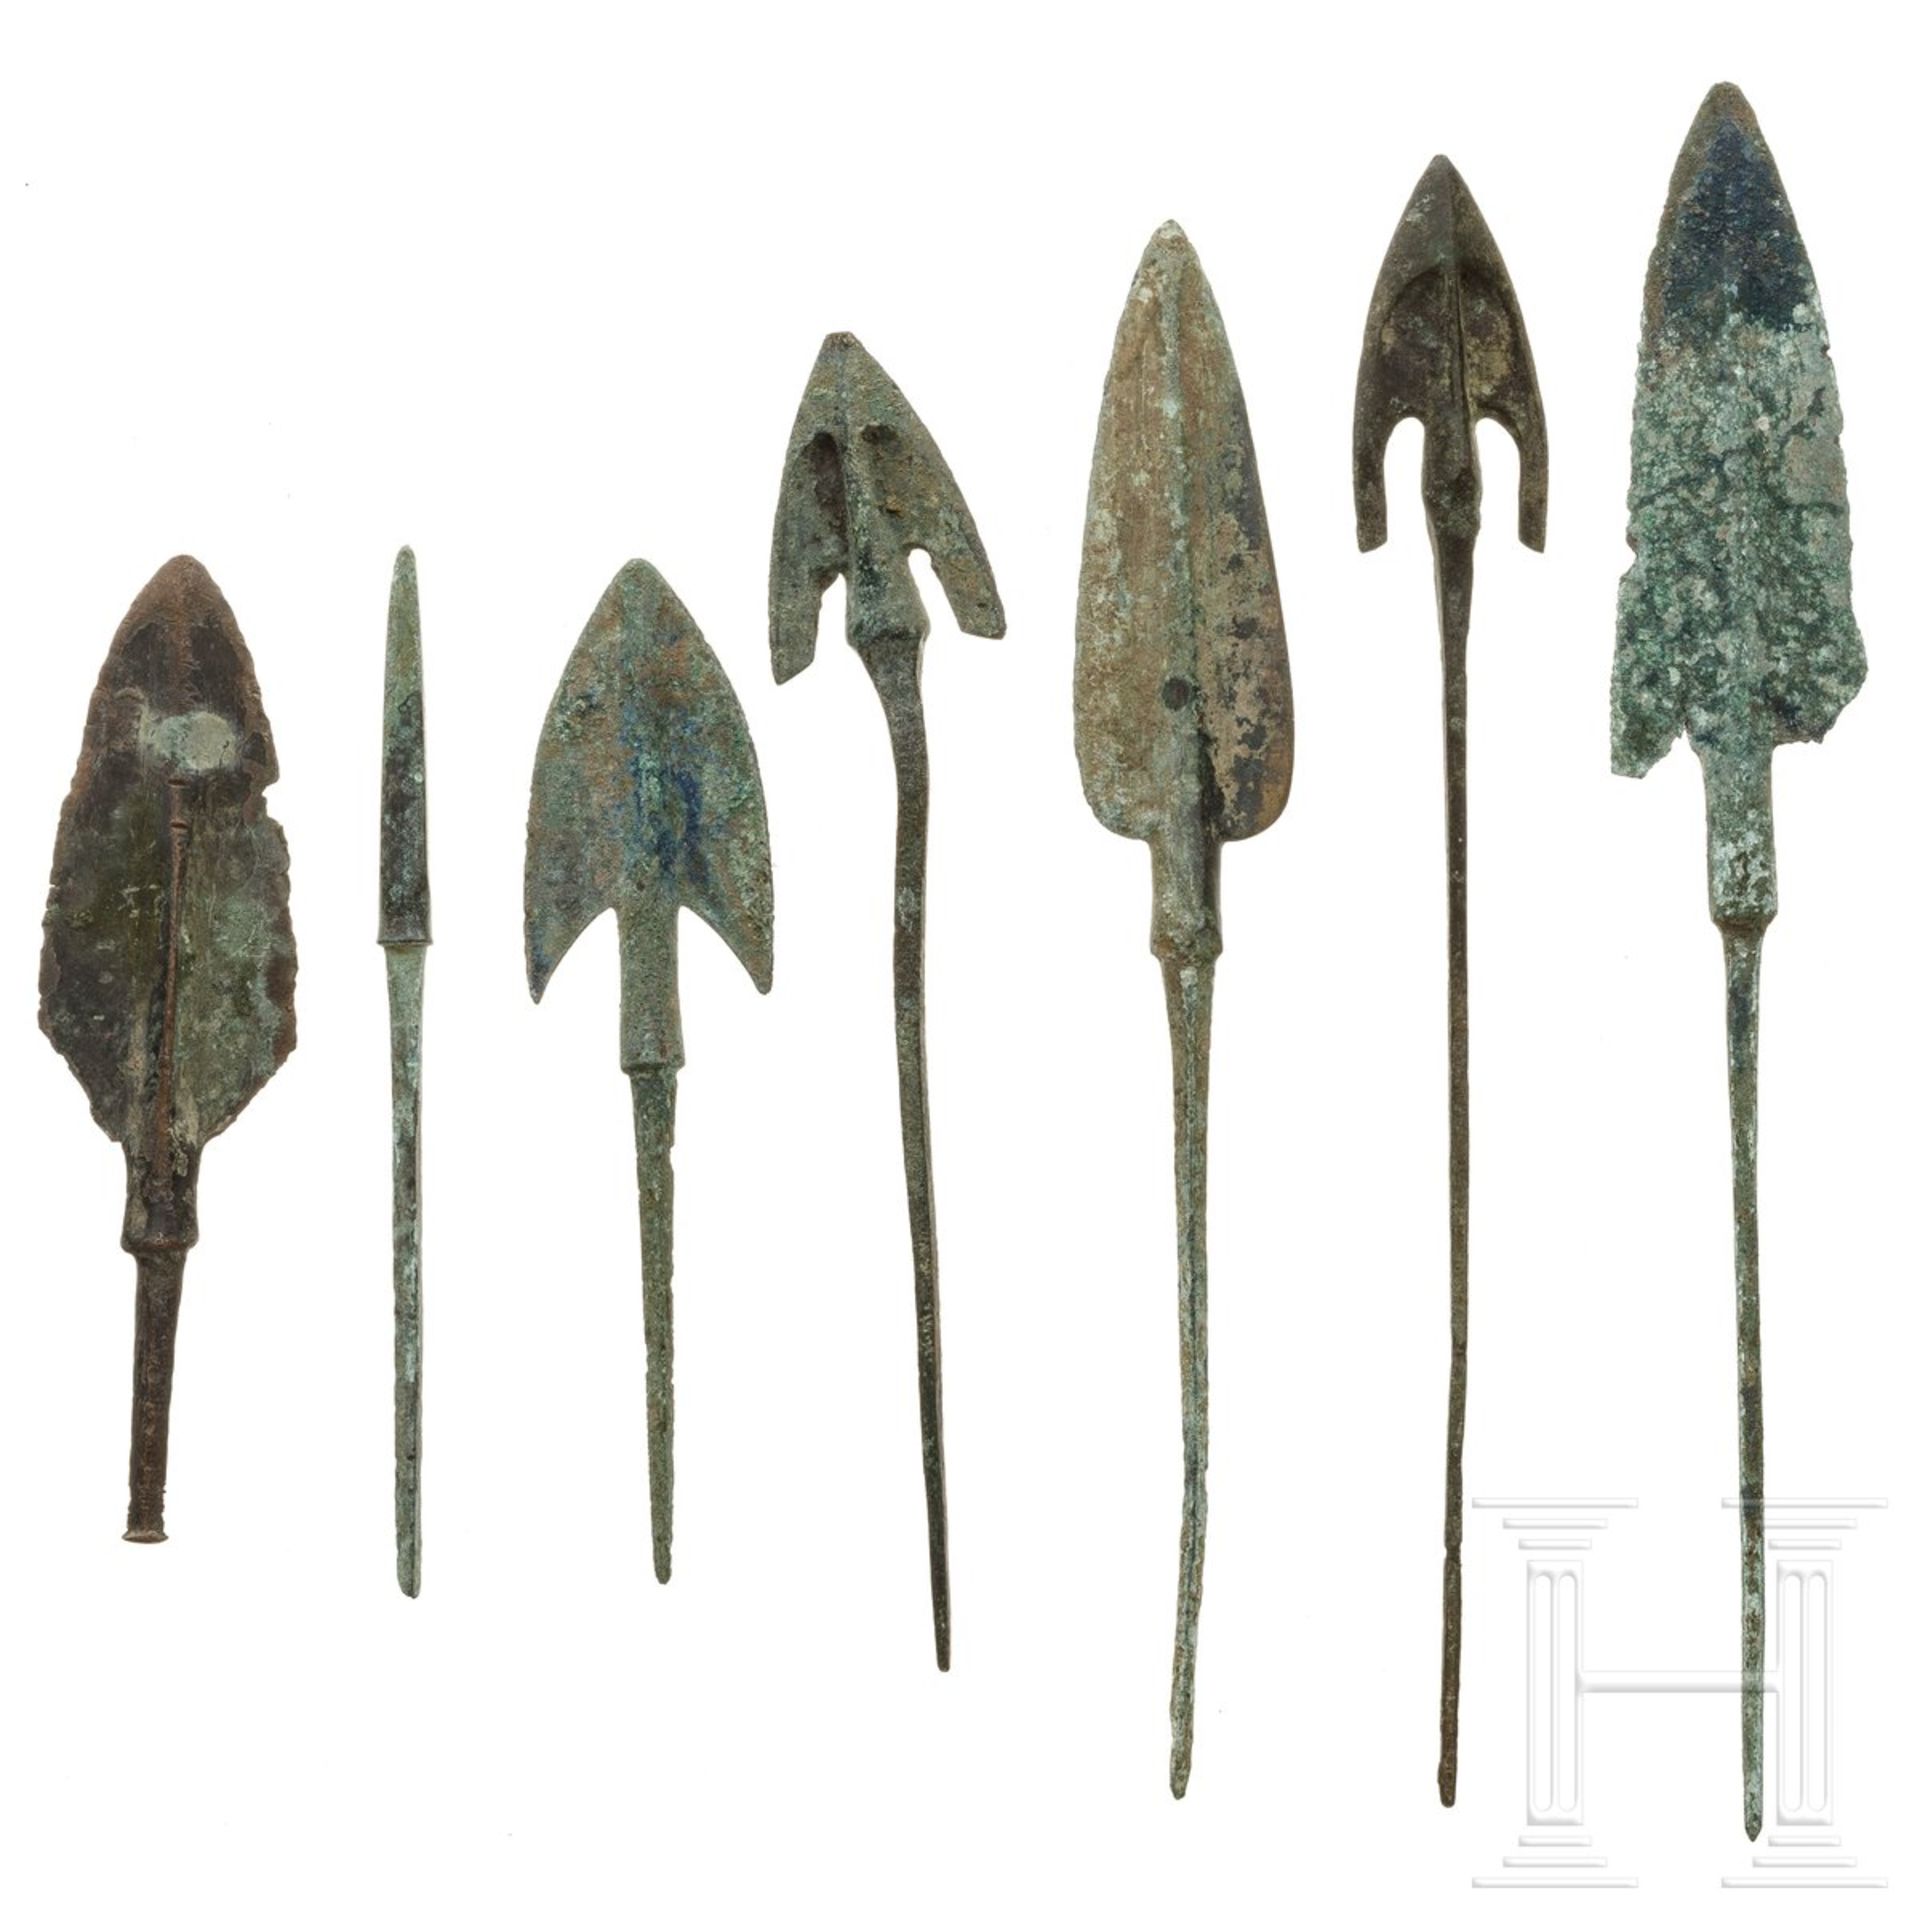 Sieben Pfeilspitzen, Bronze, Vorderasien, ca. 1000 v. Chr. - Bild 2 aus 3